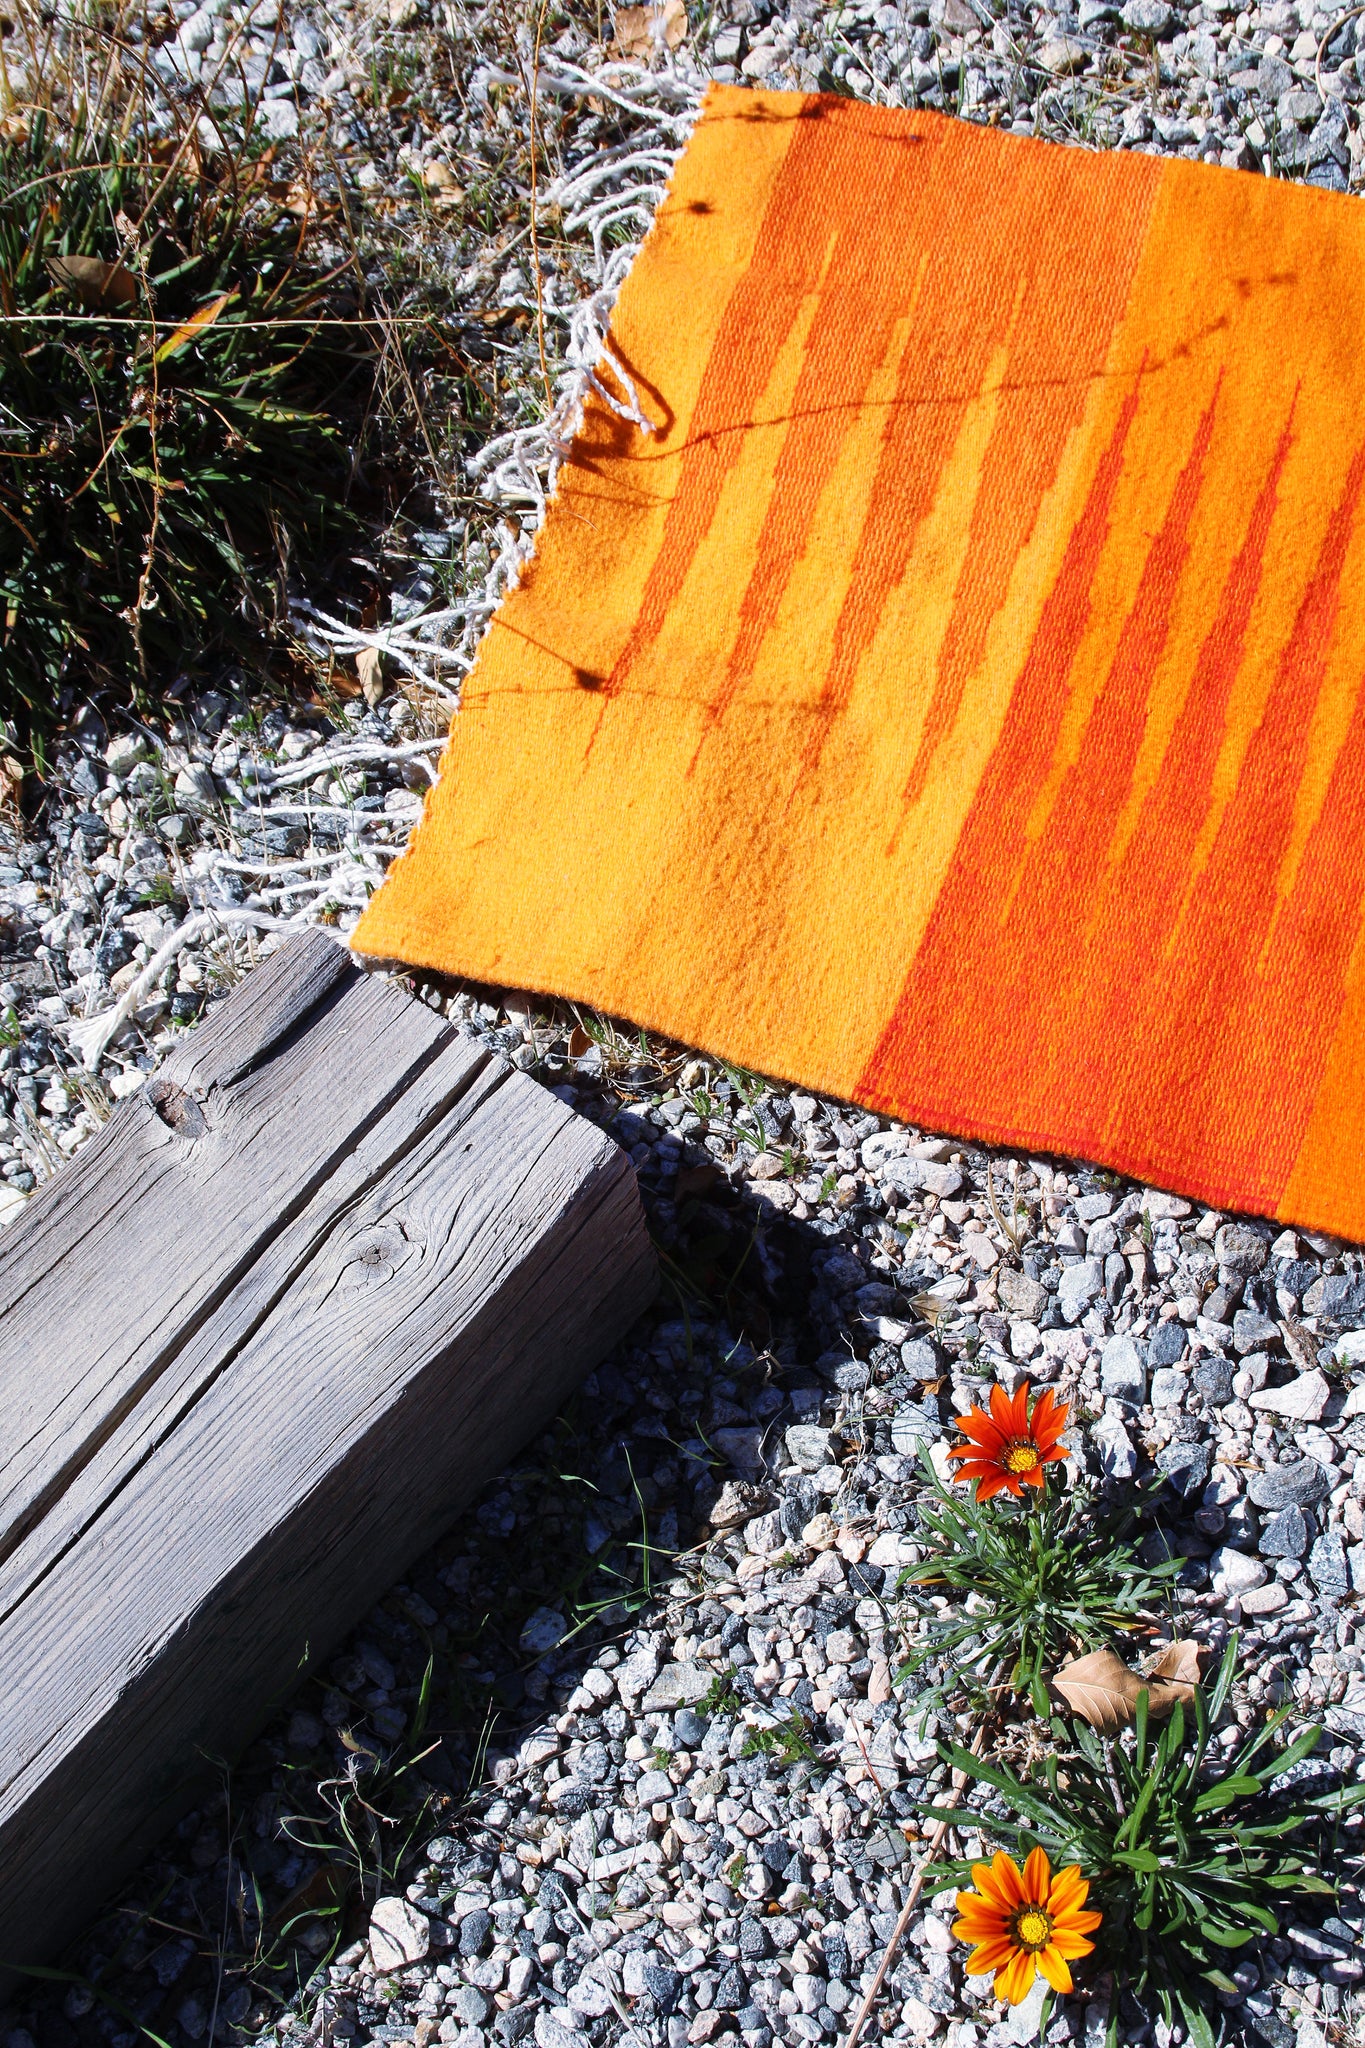 Naranjas y Granadas XL Long Runner Tapete - Artist Heirloom Original Wool Rug